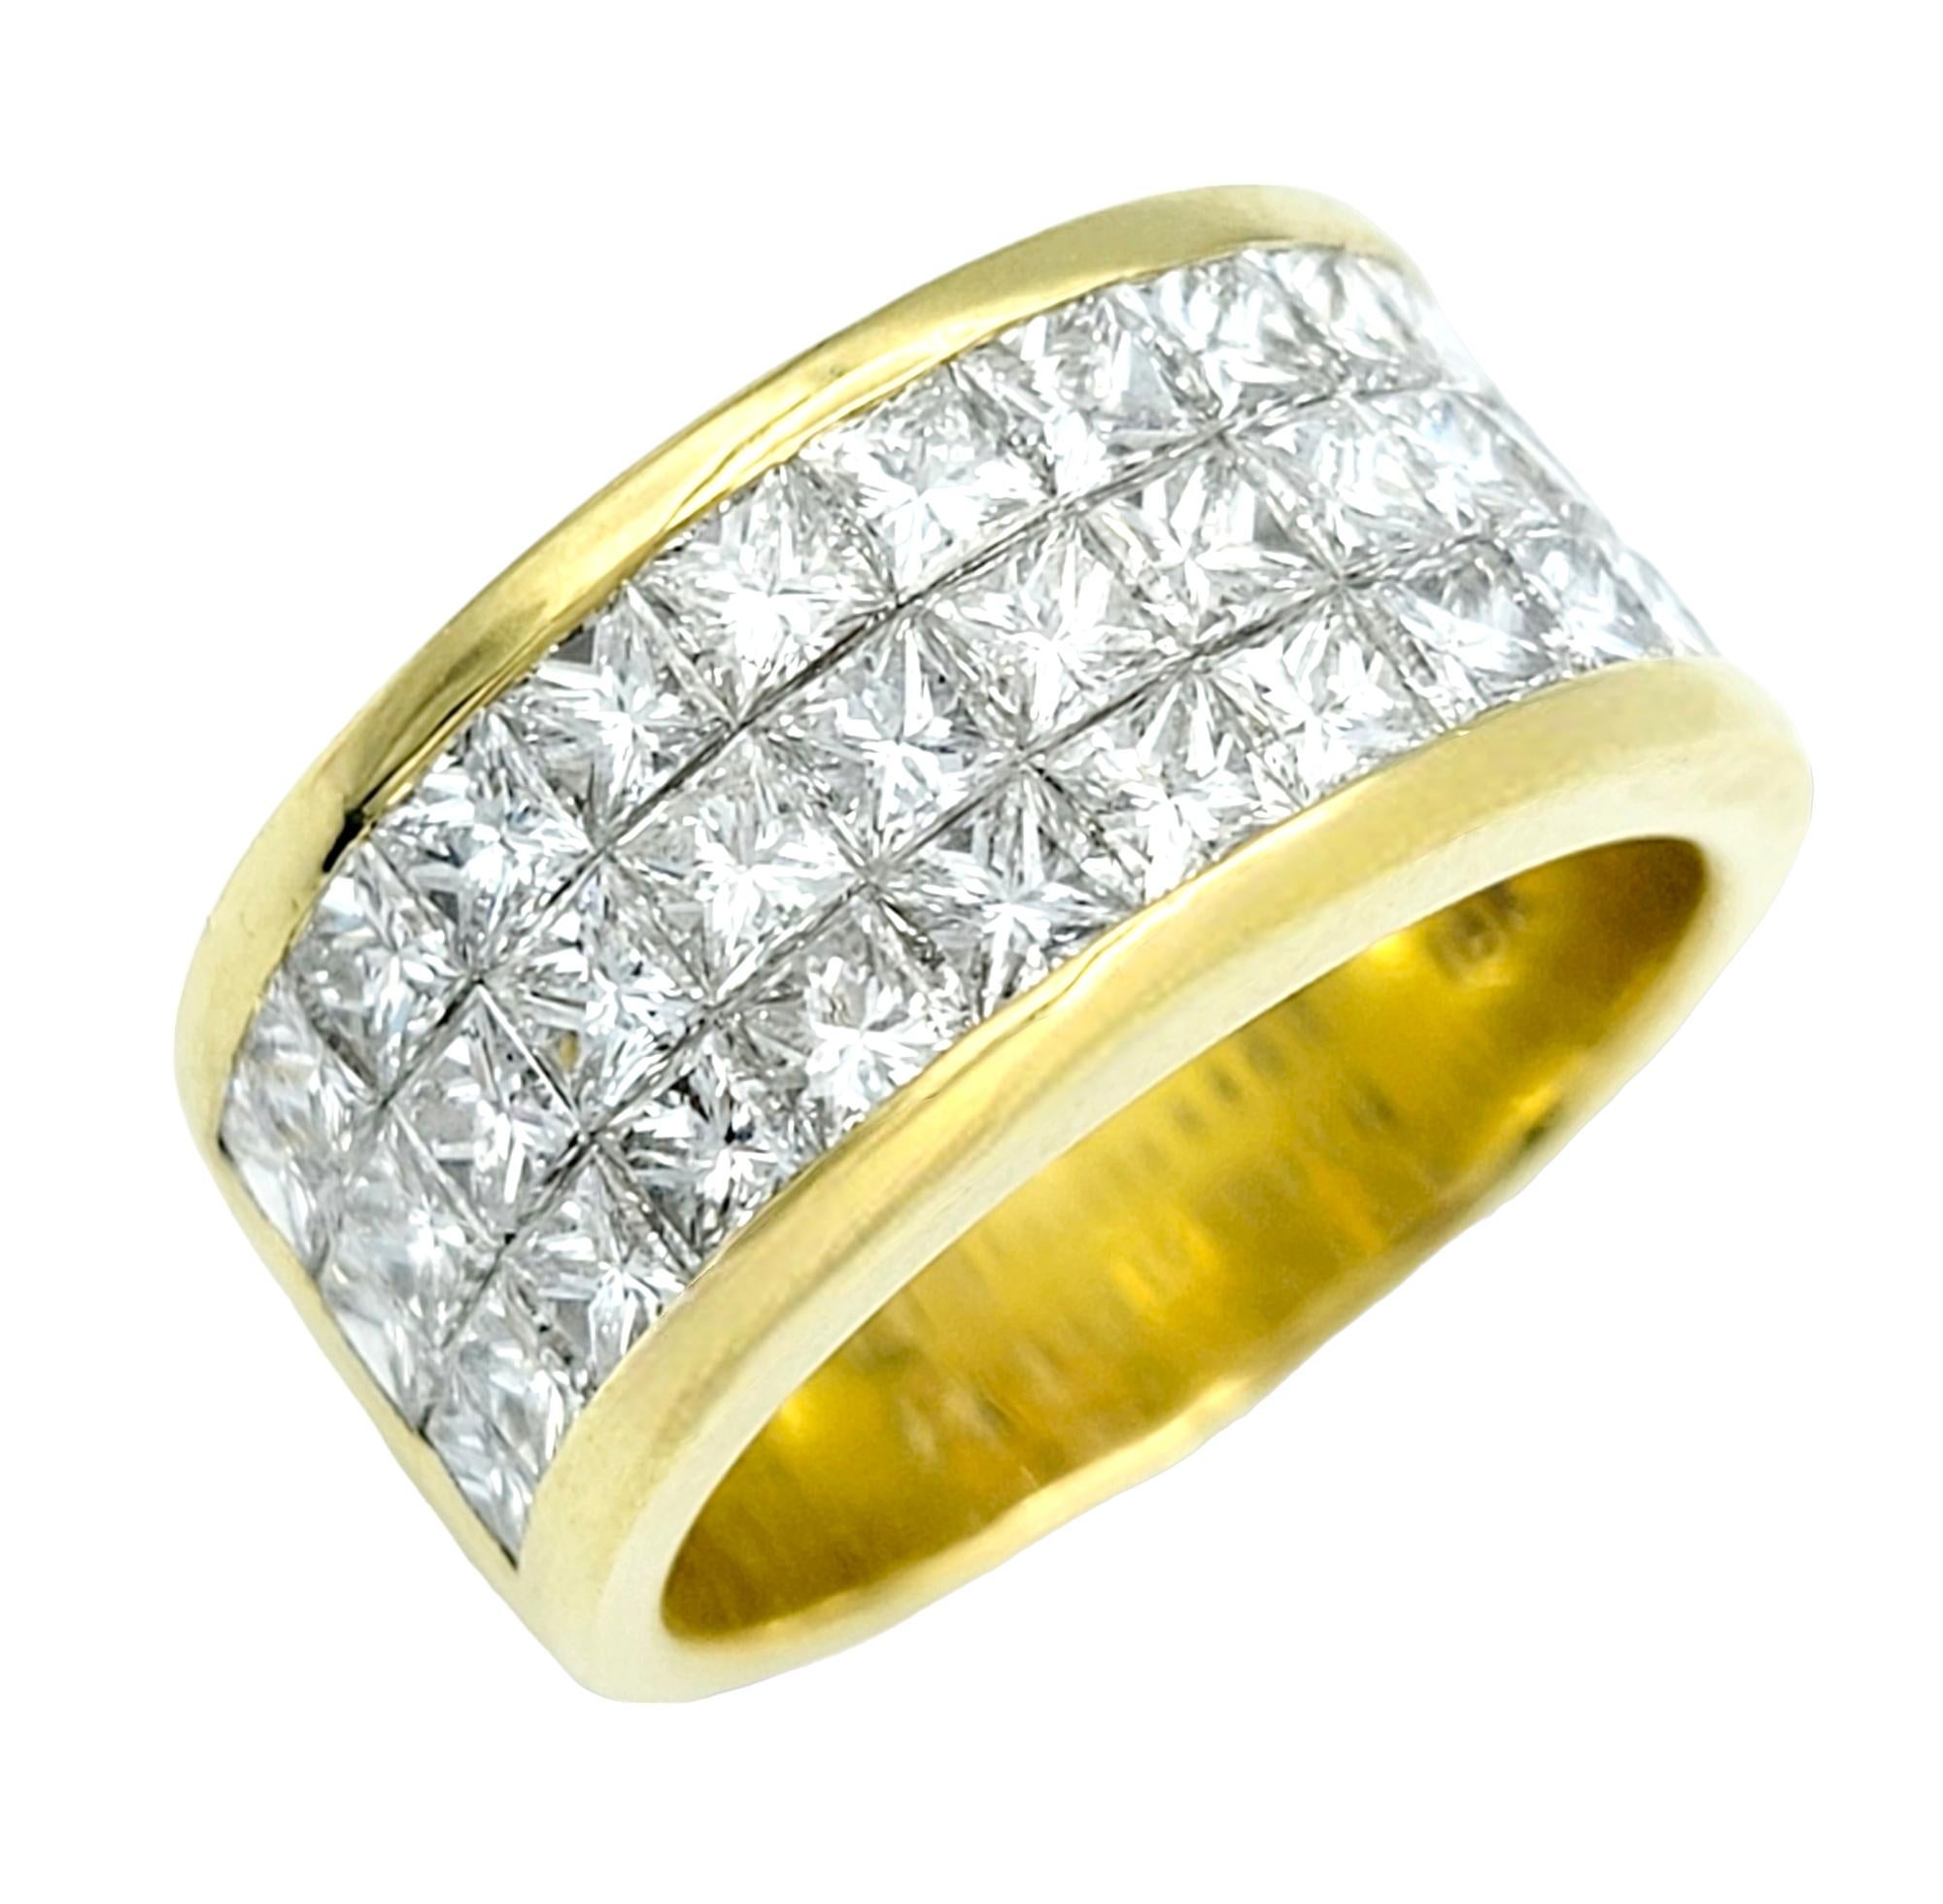 Ringgröße: 7.25

Dieser umwerfend funkelnde Ring aus 18 Karat Gold ist ein schillerndes Zeugnis zeitloser Eleganz und moderner Raffinesse. Im Mittelpunkt dieses atemberaubenden Rings stehen die drei Reihen schimmernder Diamanten im Prinzess-Schliff,